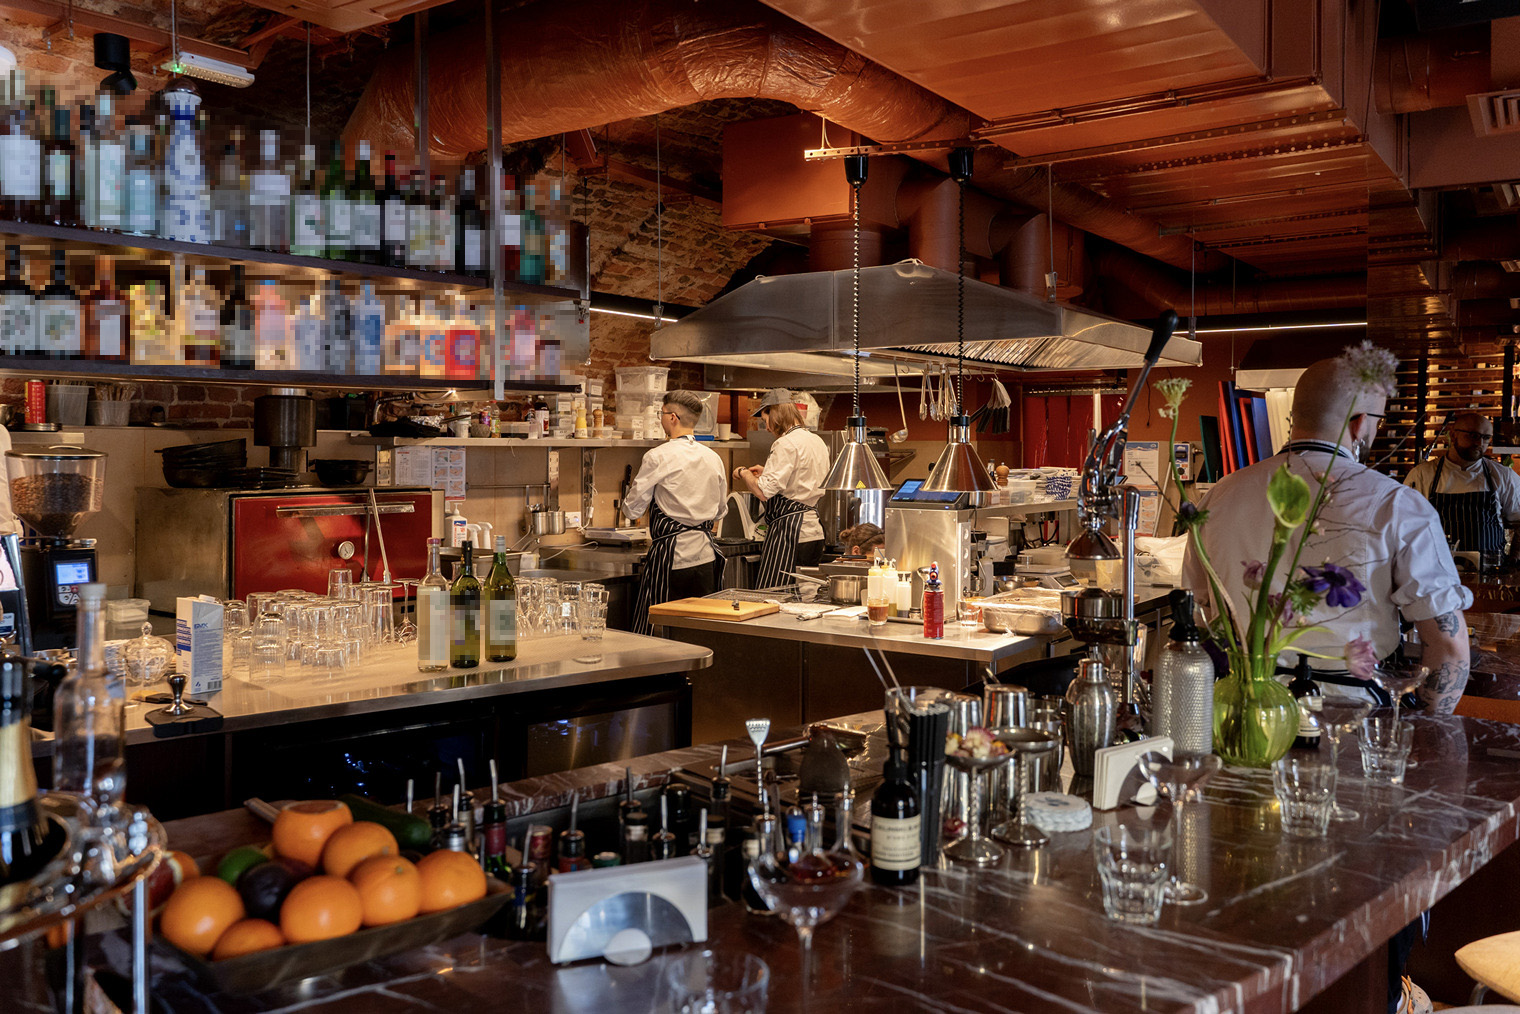 Интерьер этого ресторана italy&co своей эклектикой напоминает их другие проекты: немного Salone pasta&bar, немного Juan Cantina Espanola